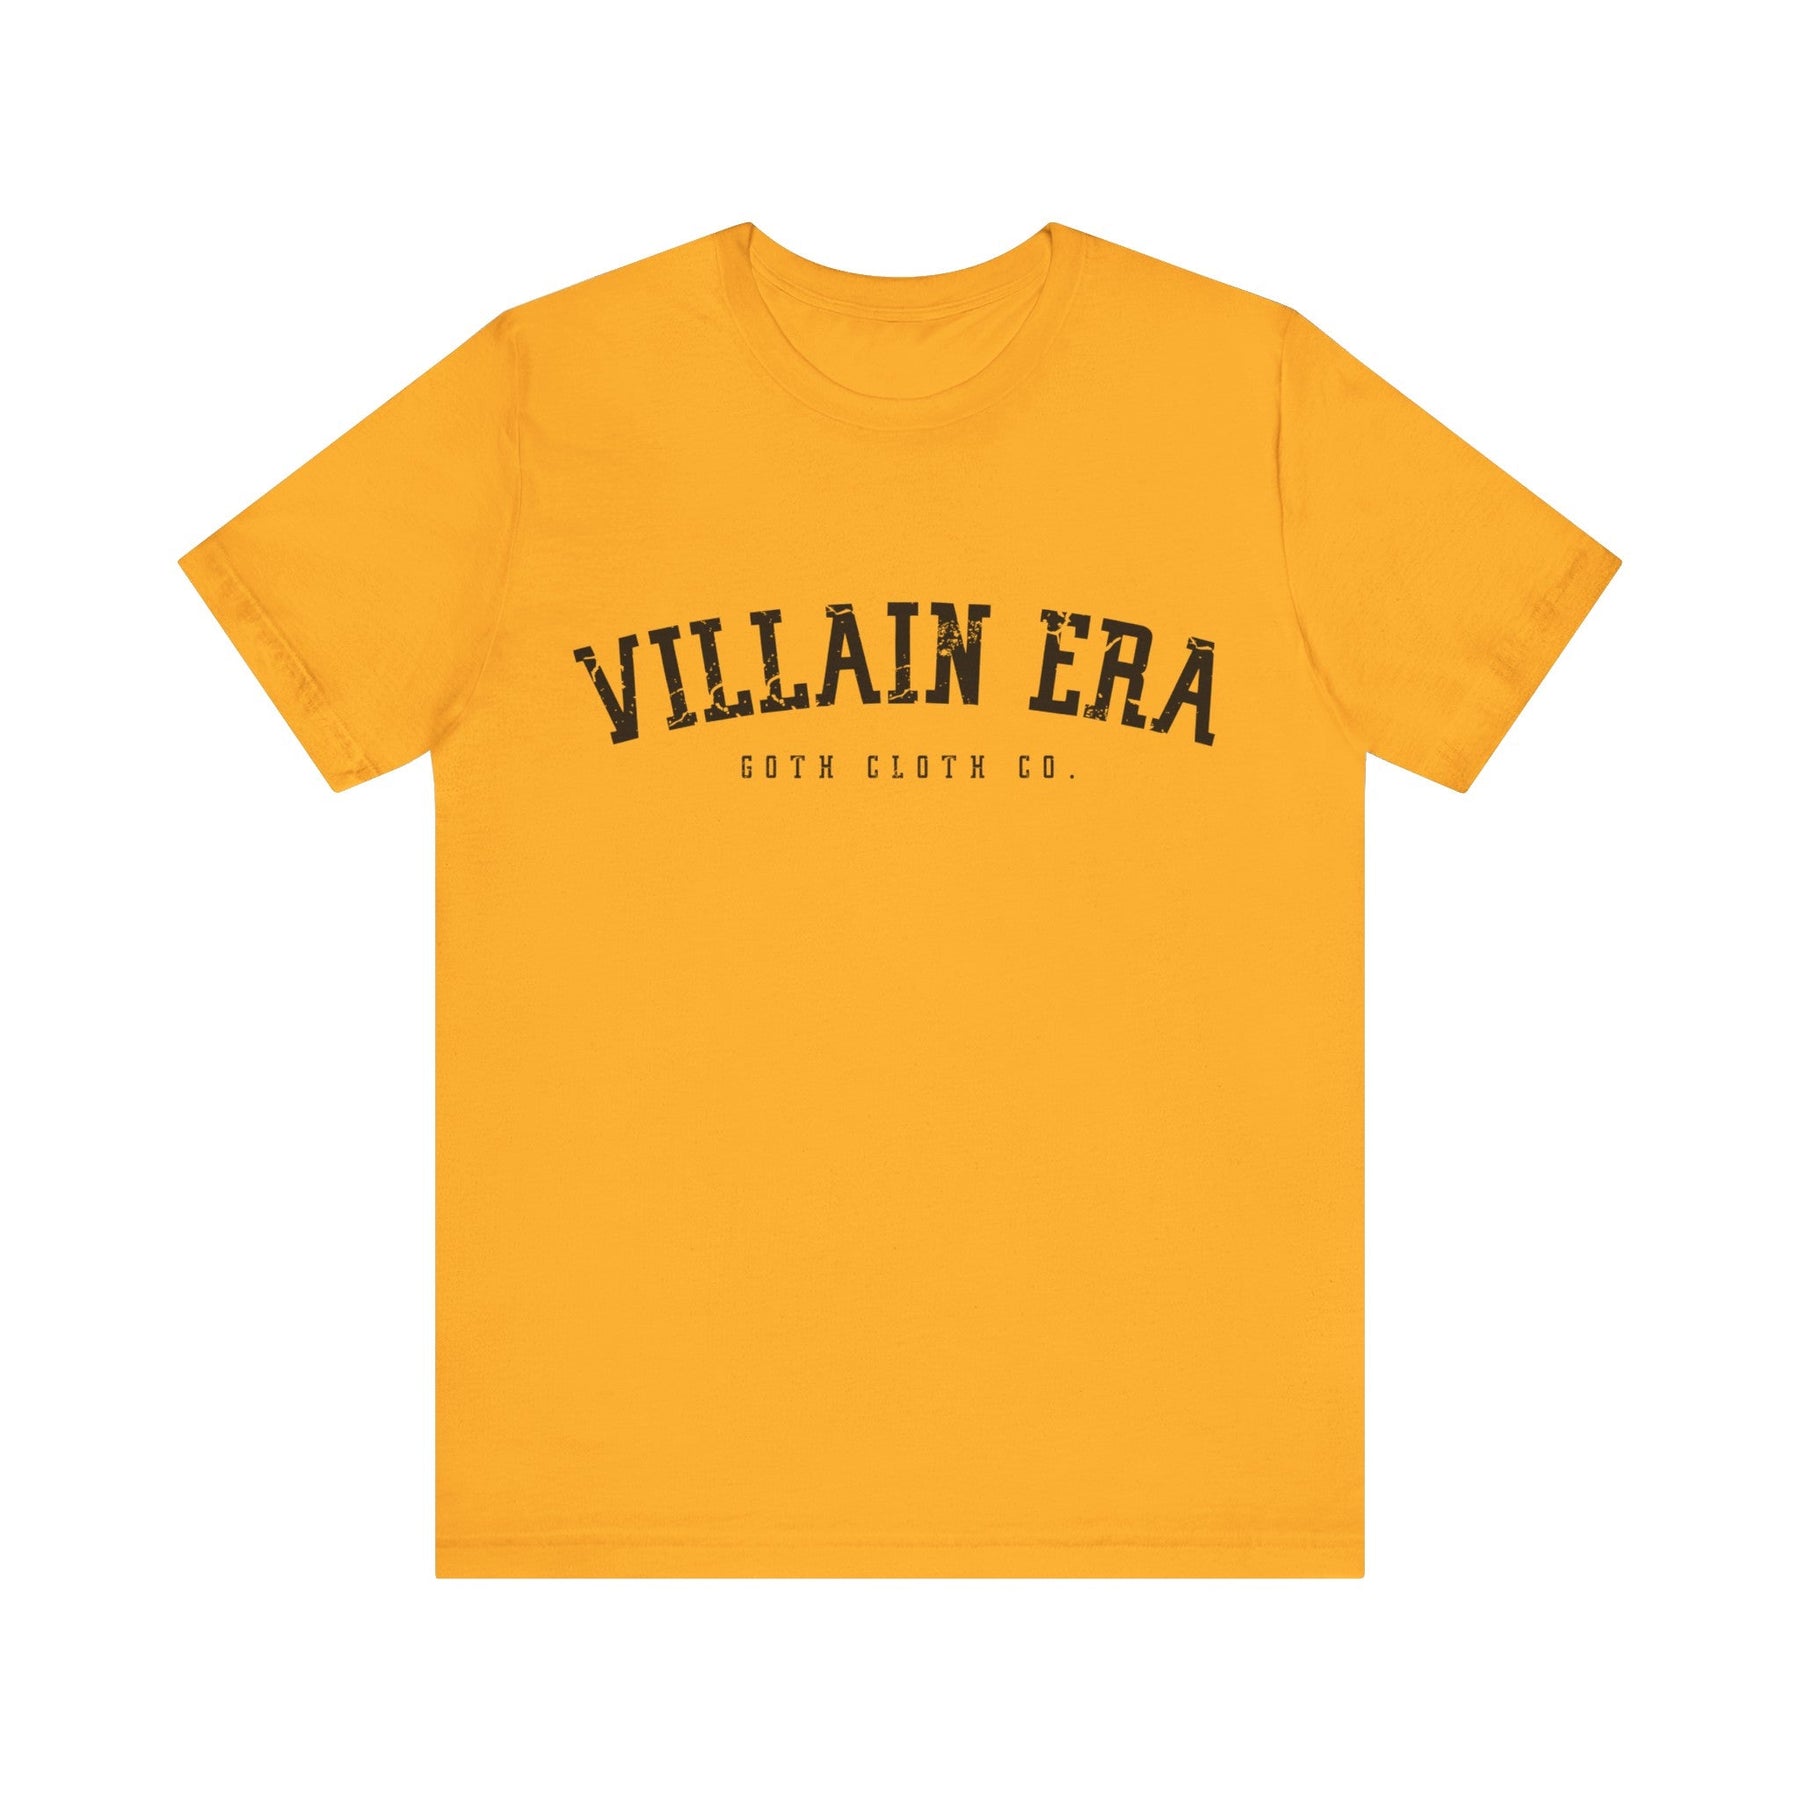 Villain Era Short Sleeve Tee - Goth Cloth Co.T - Shirt13361415522702430210